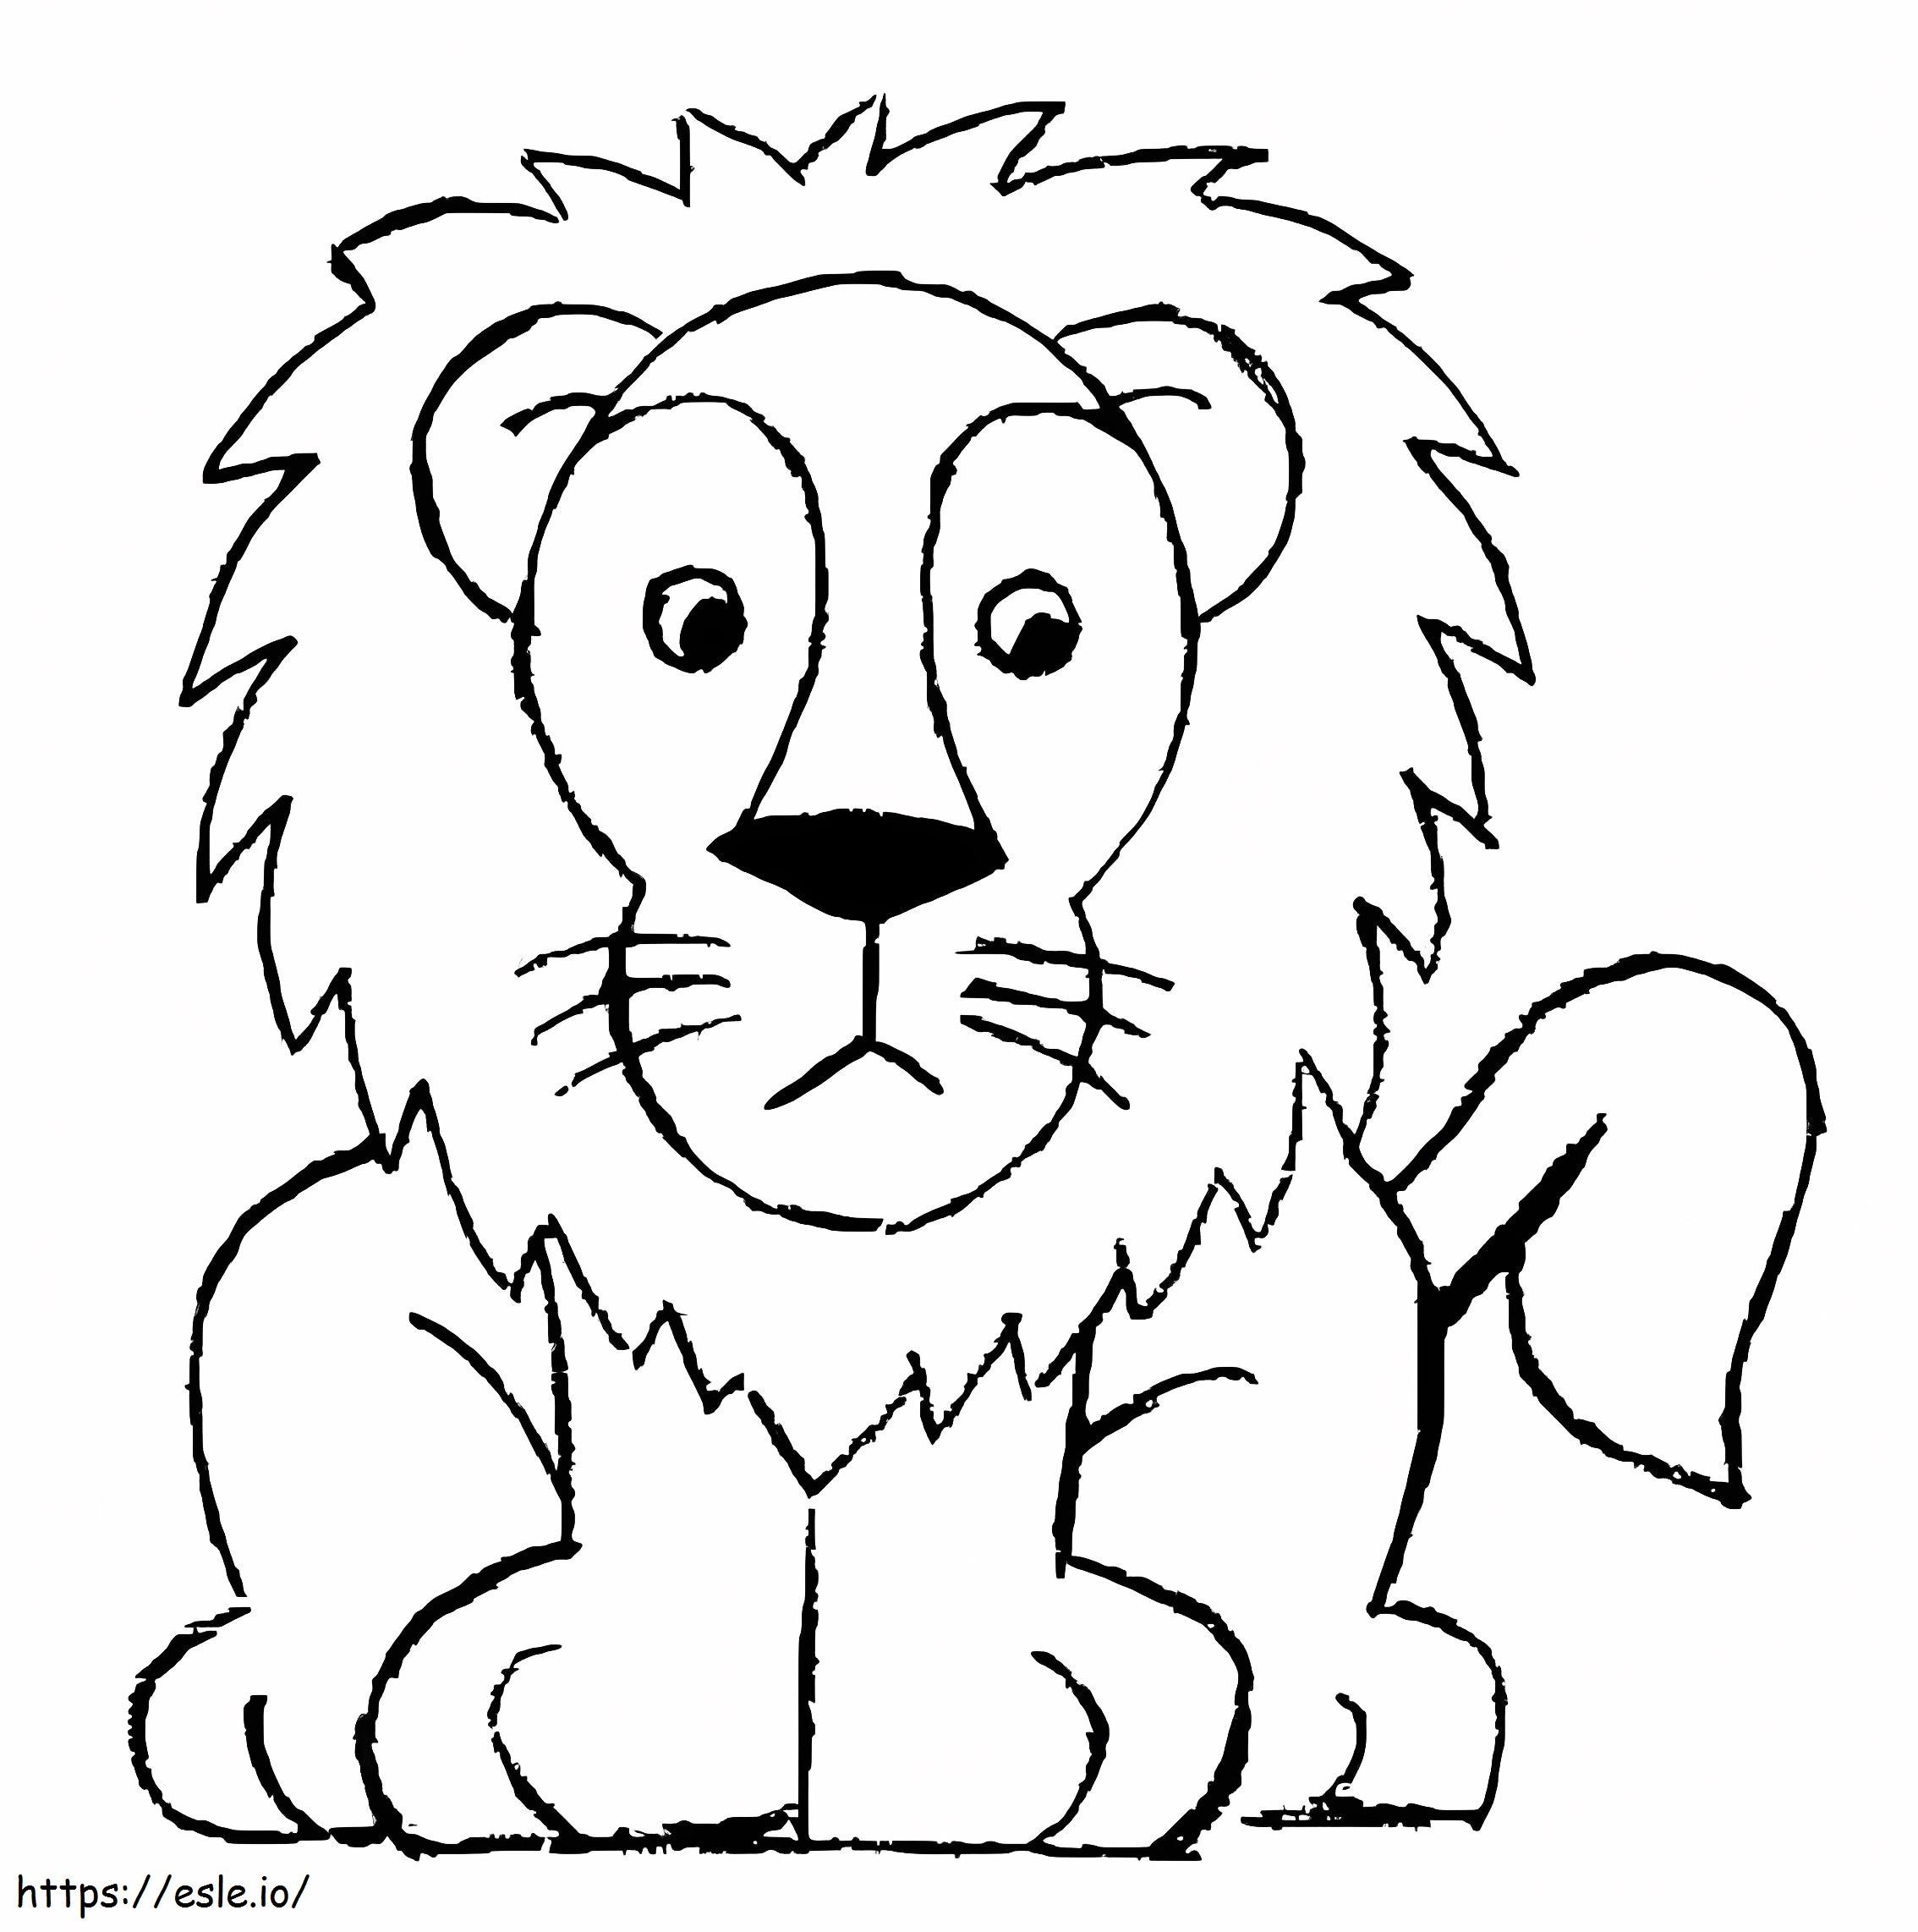 Coloriage Croquis de lion facile à imprimer dessin